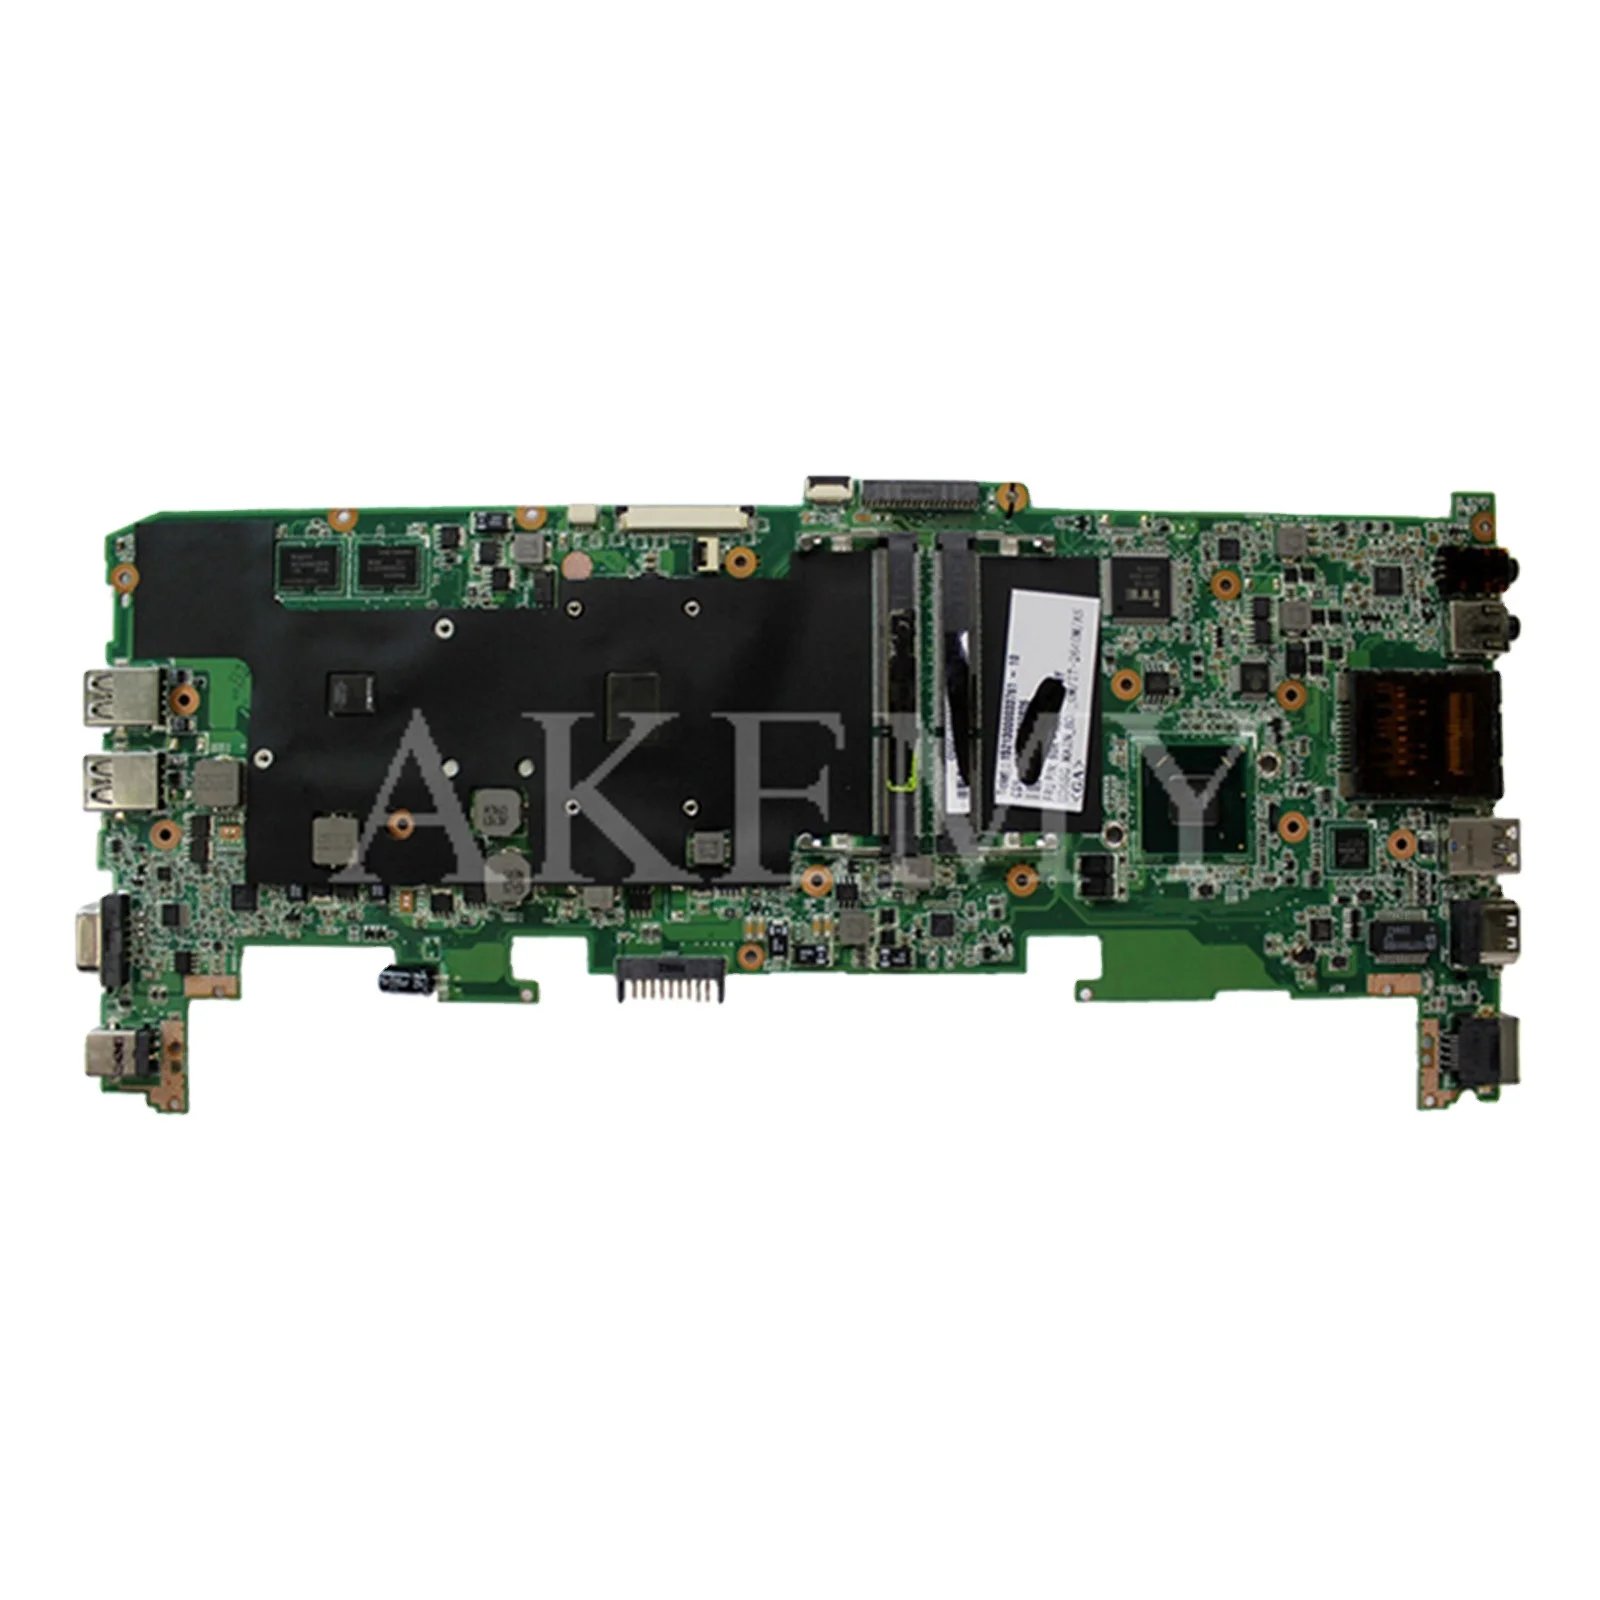 

U36SD original Notebook Mainboard GT520M GT610M GPU I3 I5 I7 CPU For Asus U36S U36SG U44SG U36SD laptop motherboard